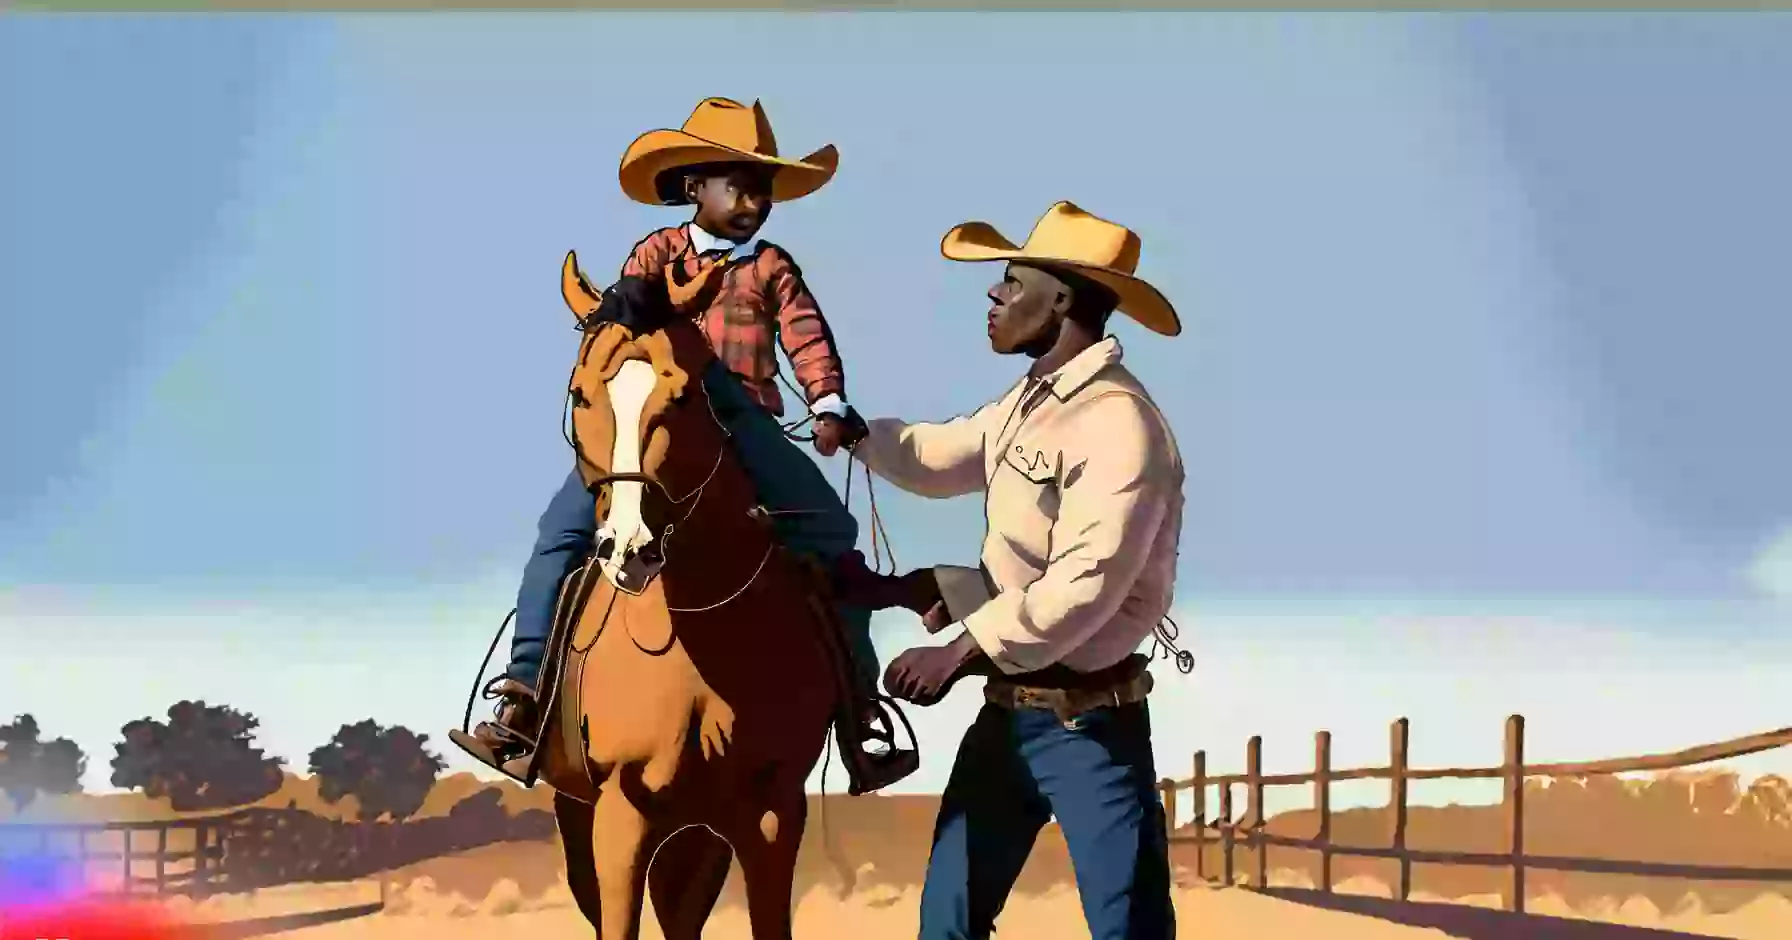 What Were Cowboy Beliefs?